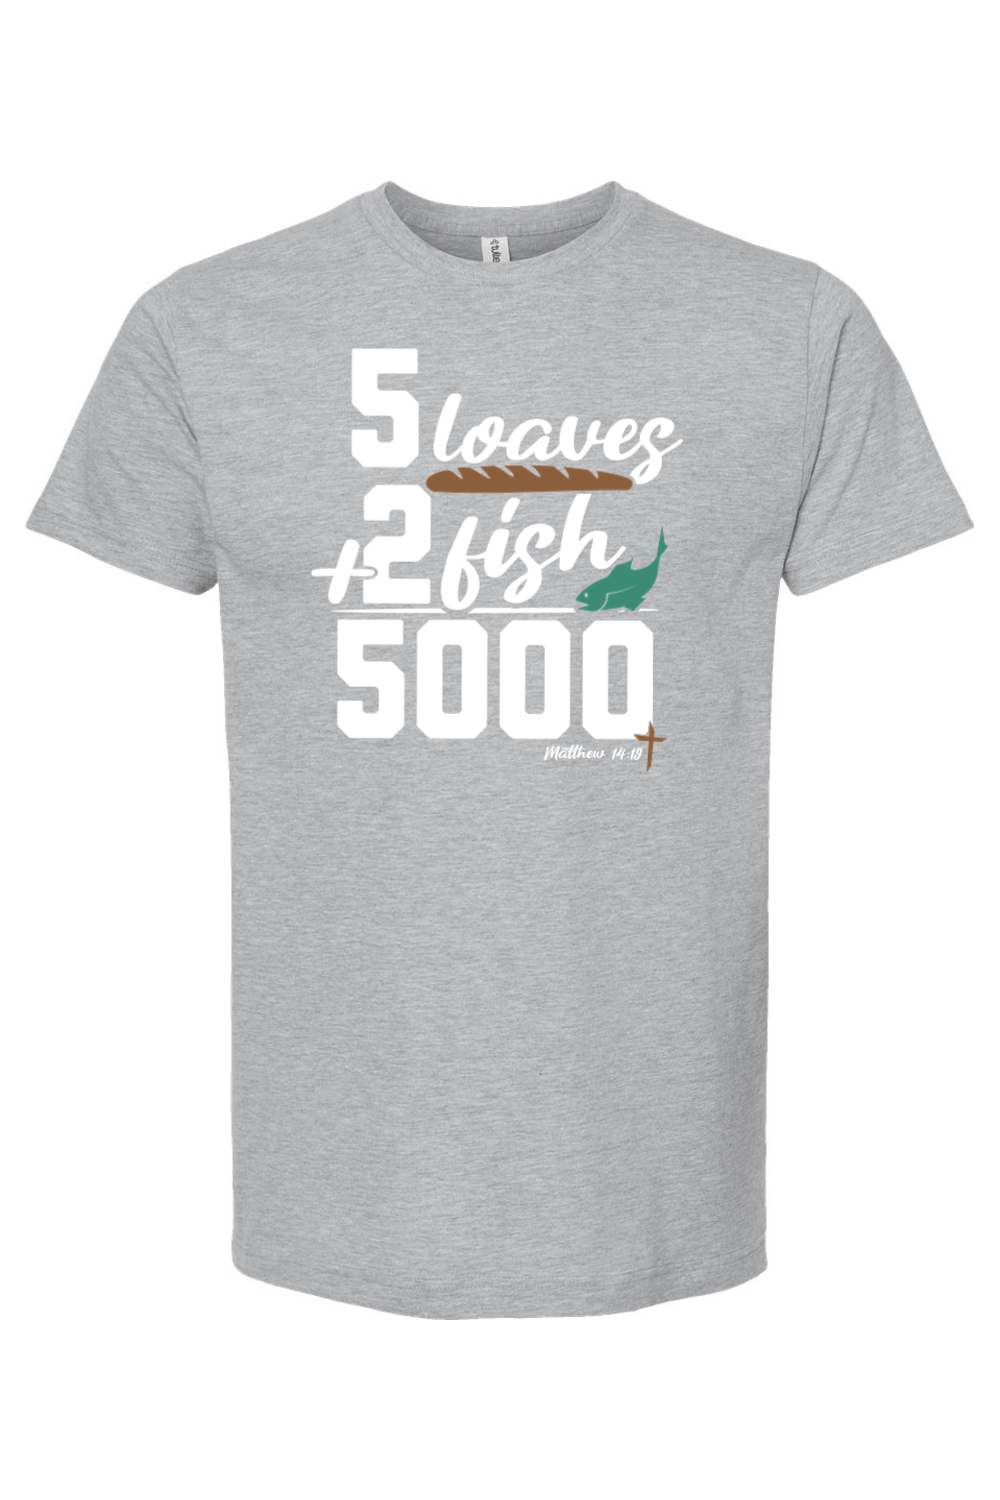 5 Loaves + 2 Fish = 5000 - T-Shirt